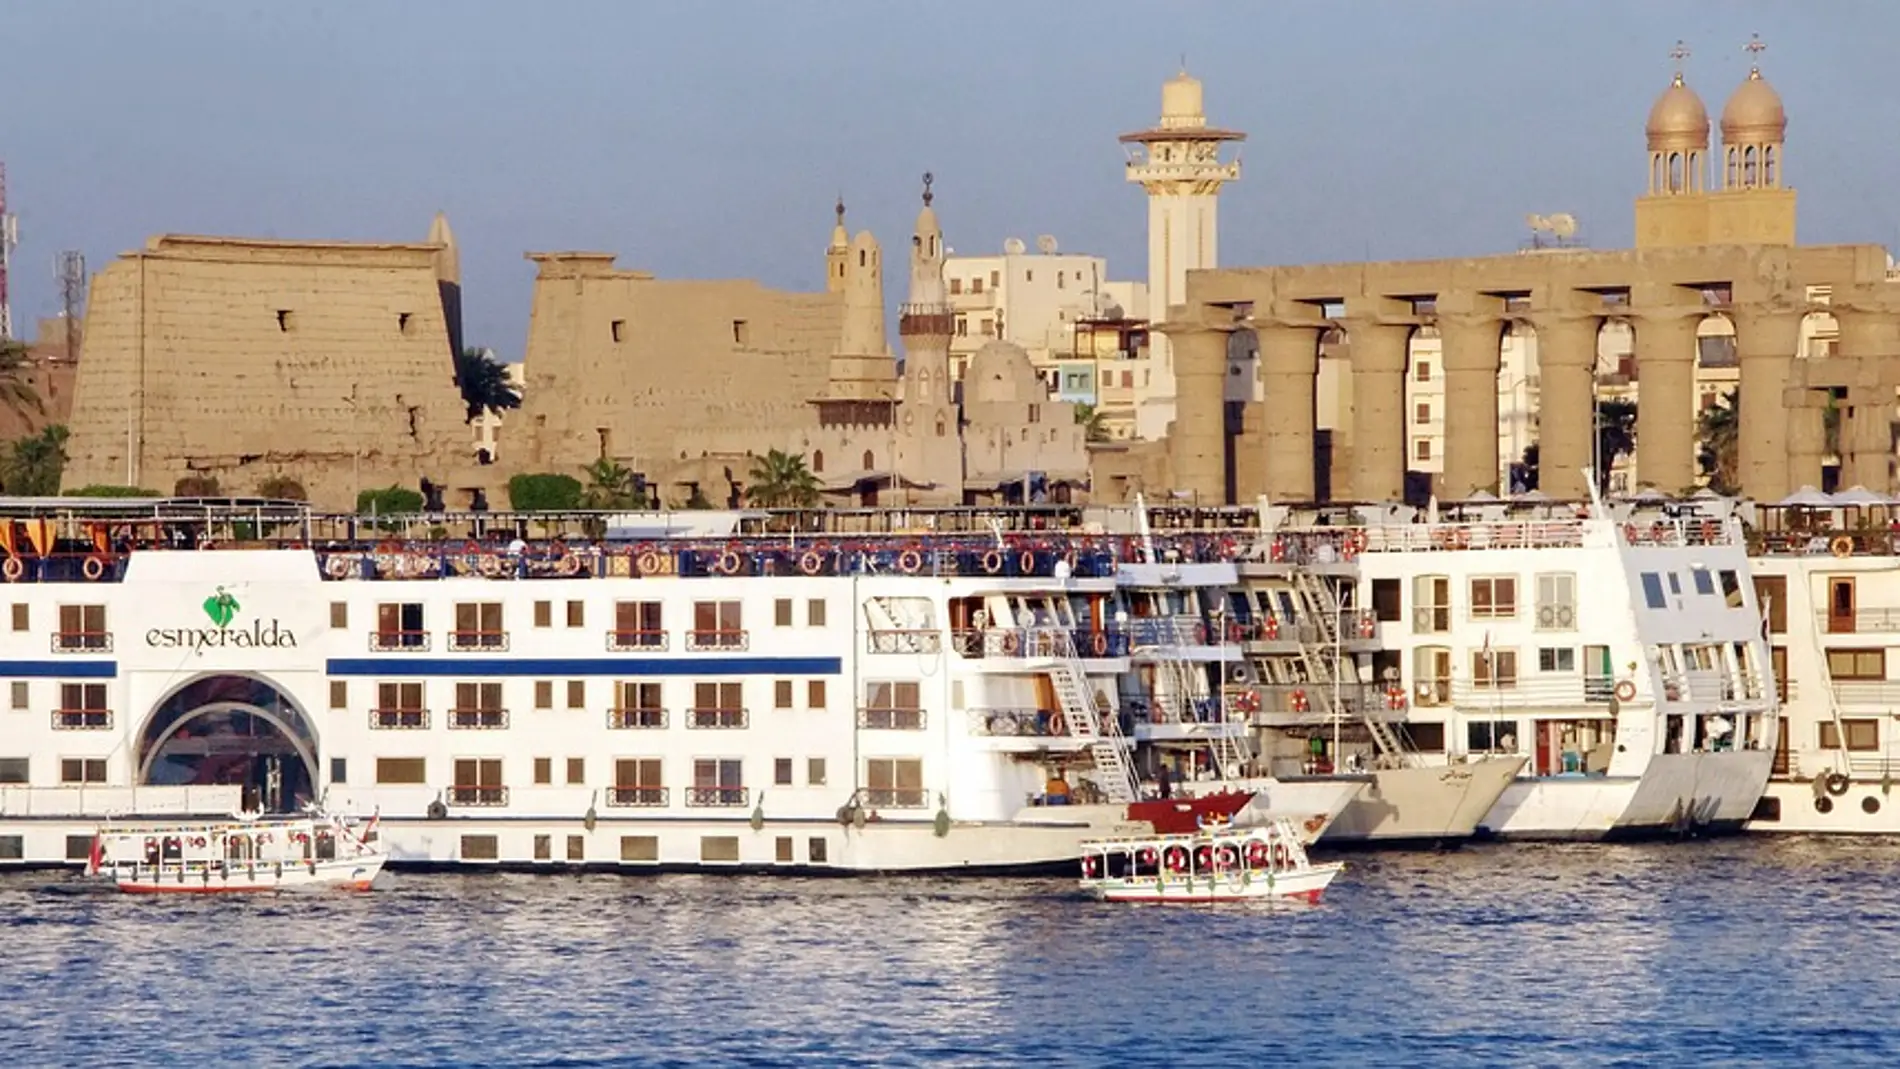  Todavía estás a tiempo de disfrutar de un crucero por el Nilo antes de que el calor apriete